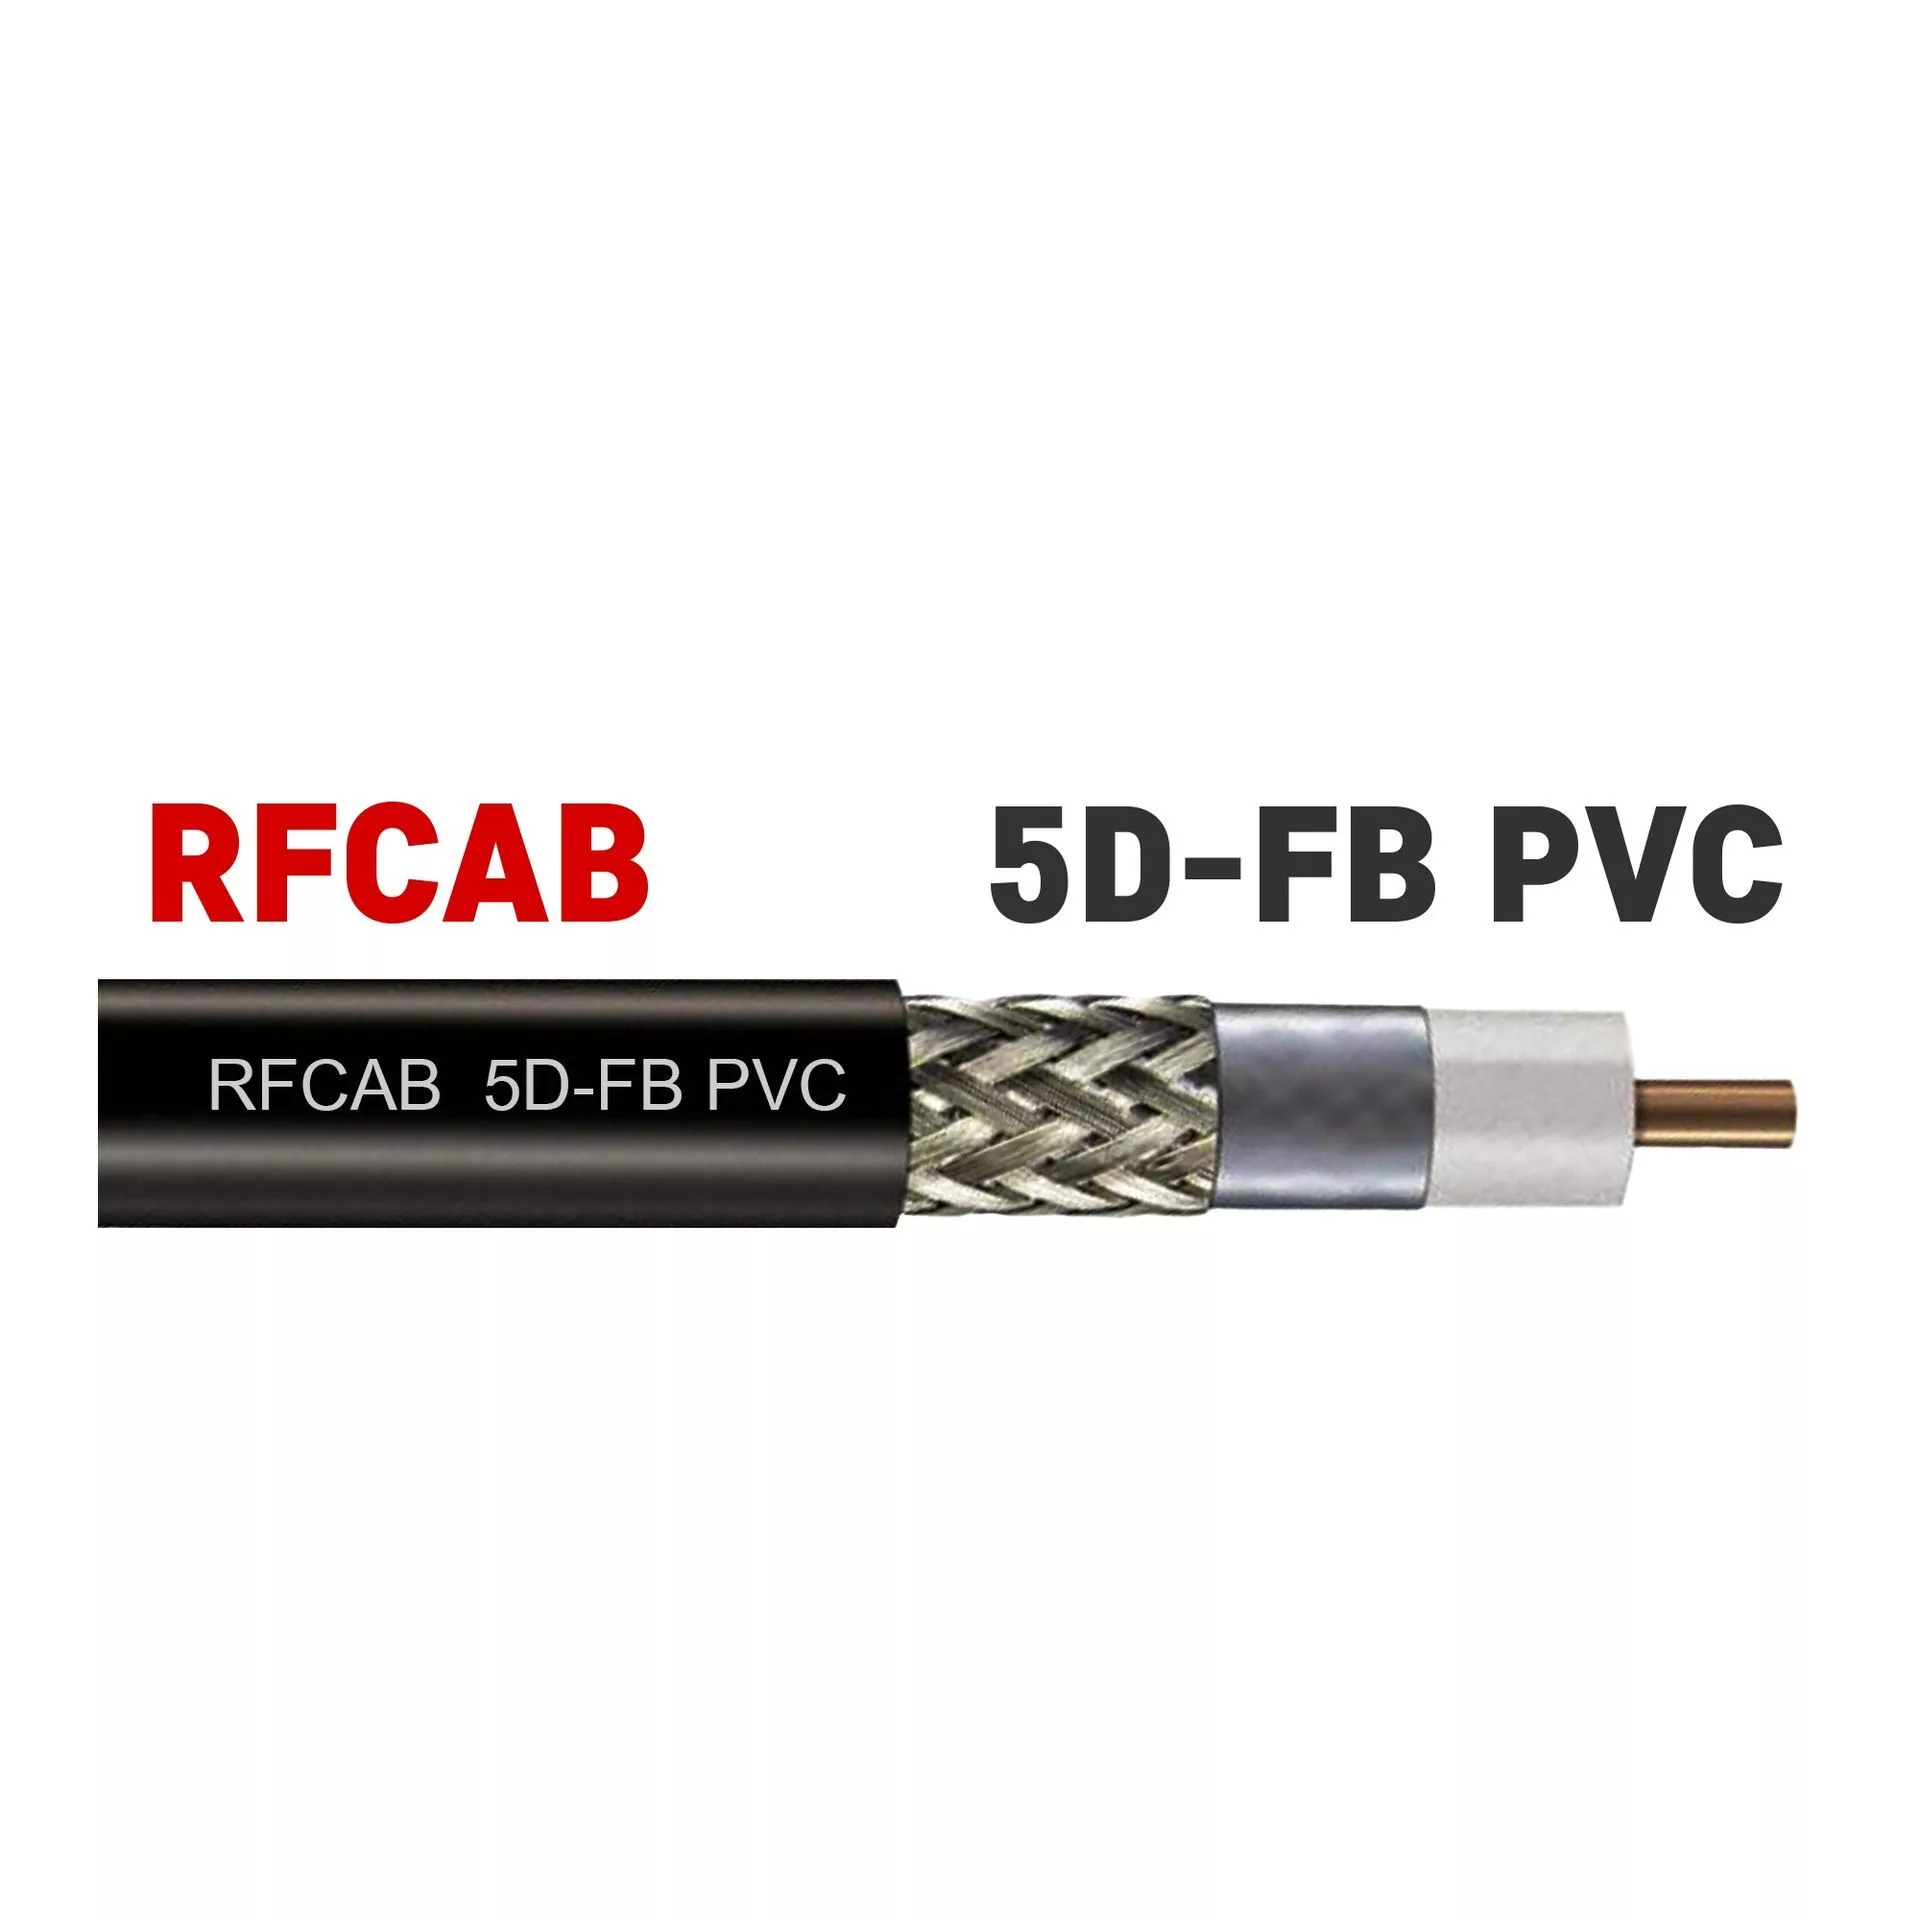 RFCAB 5D-FB PVC Радиочастотный коаксиальный кабель 50 Ом компании RFCAB